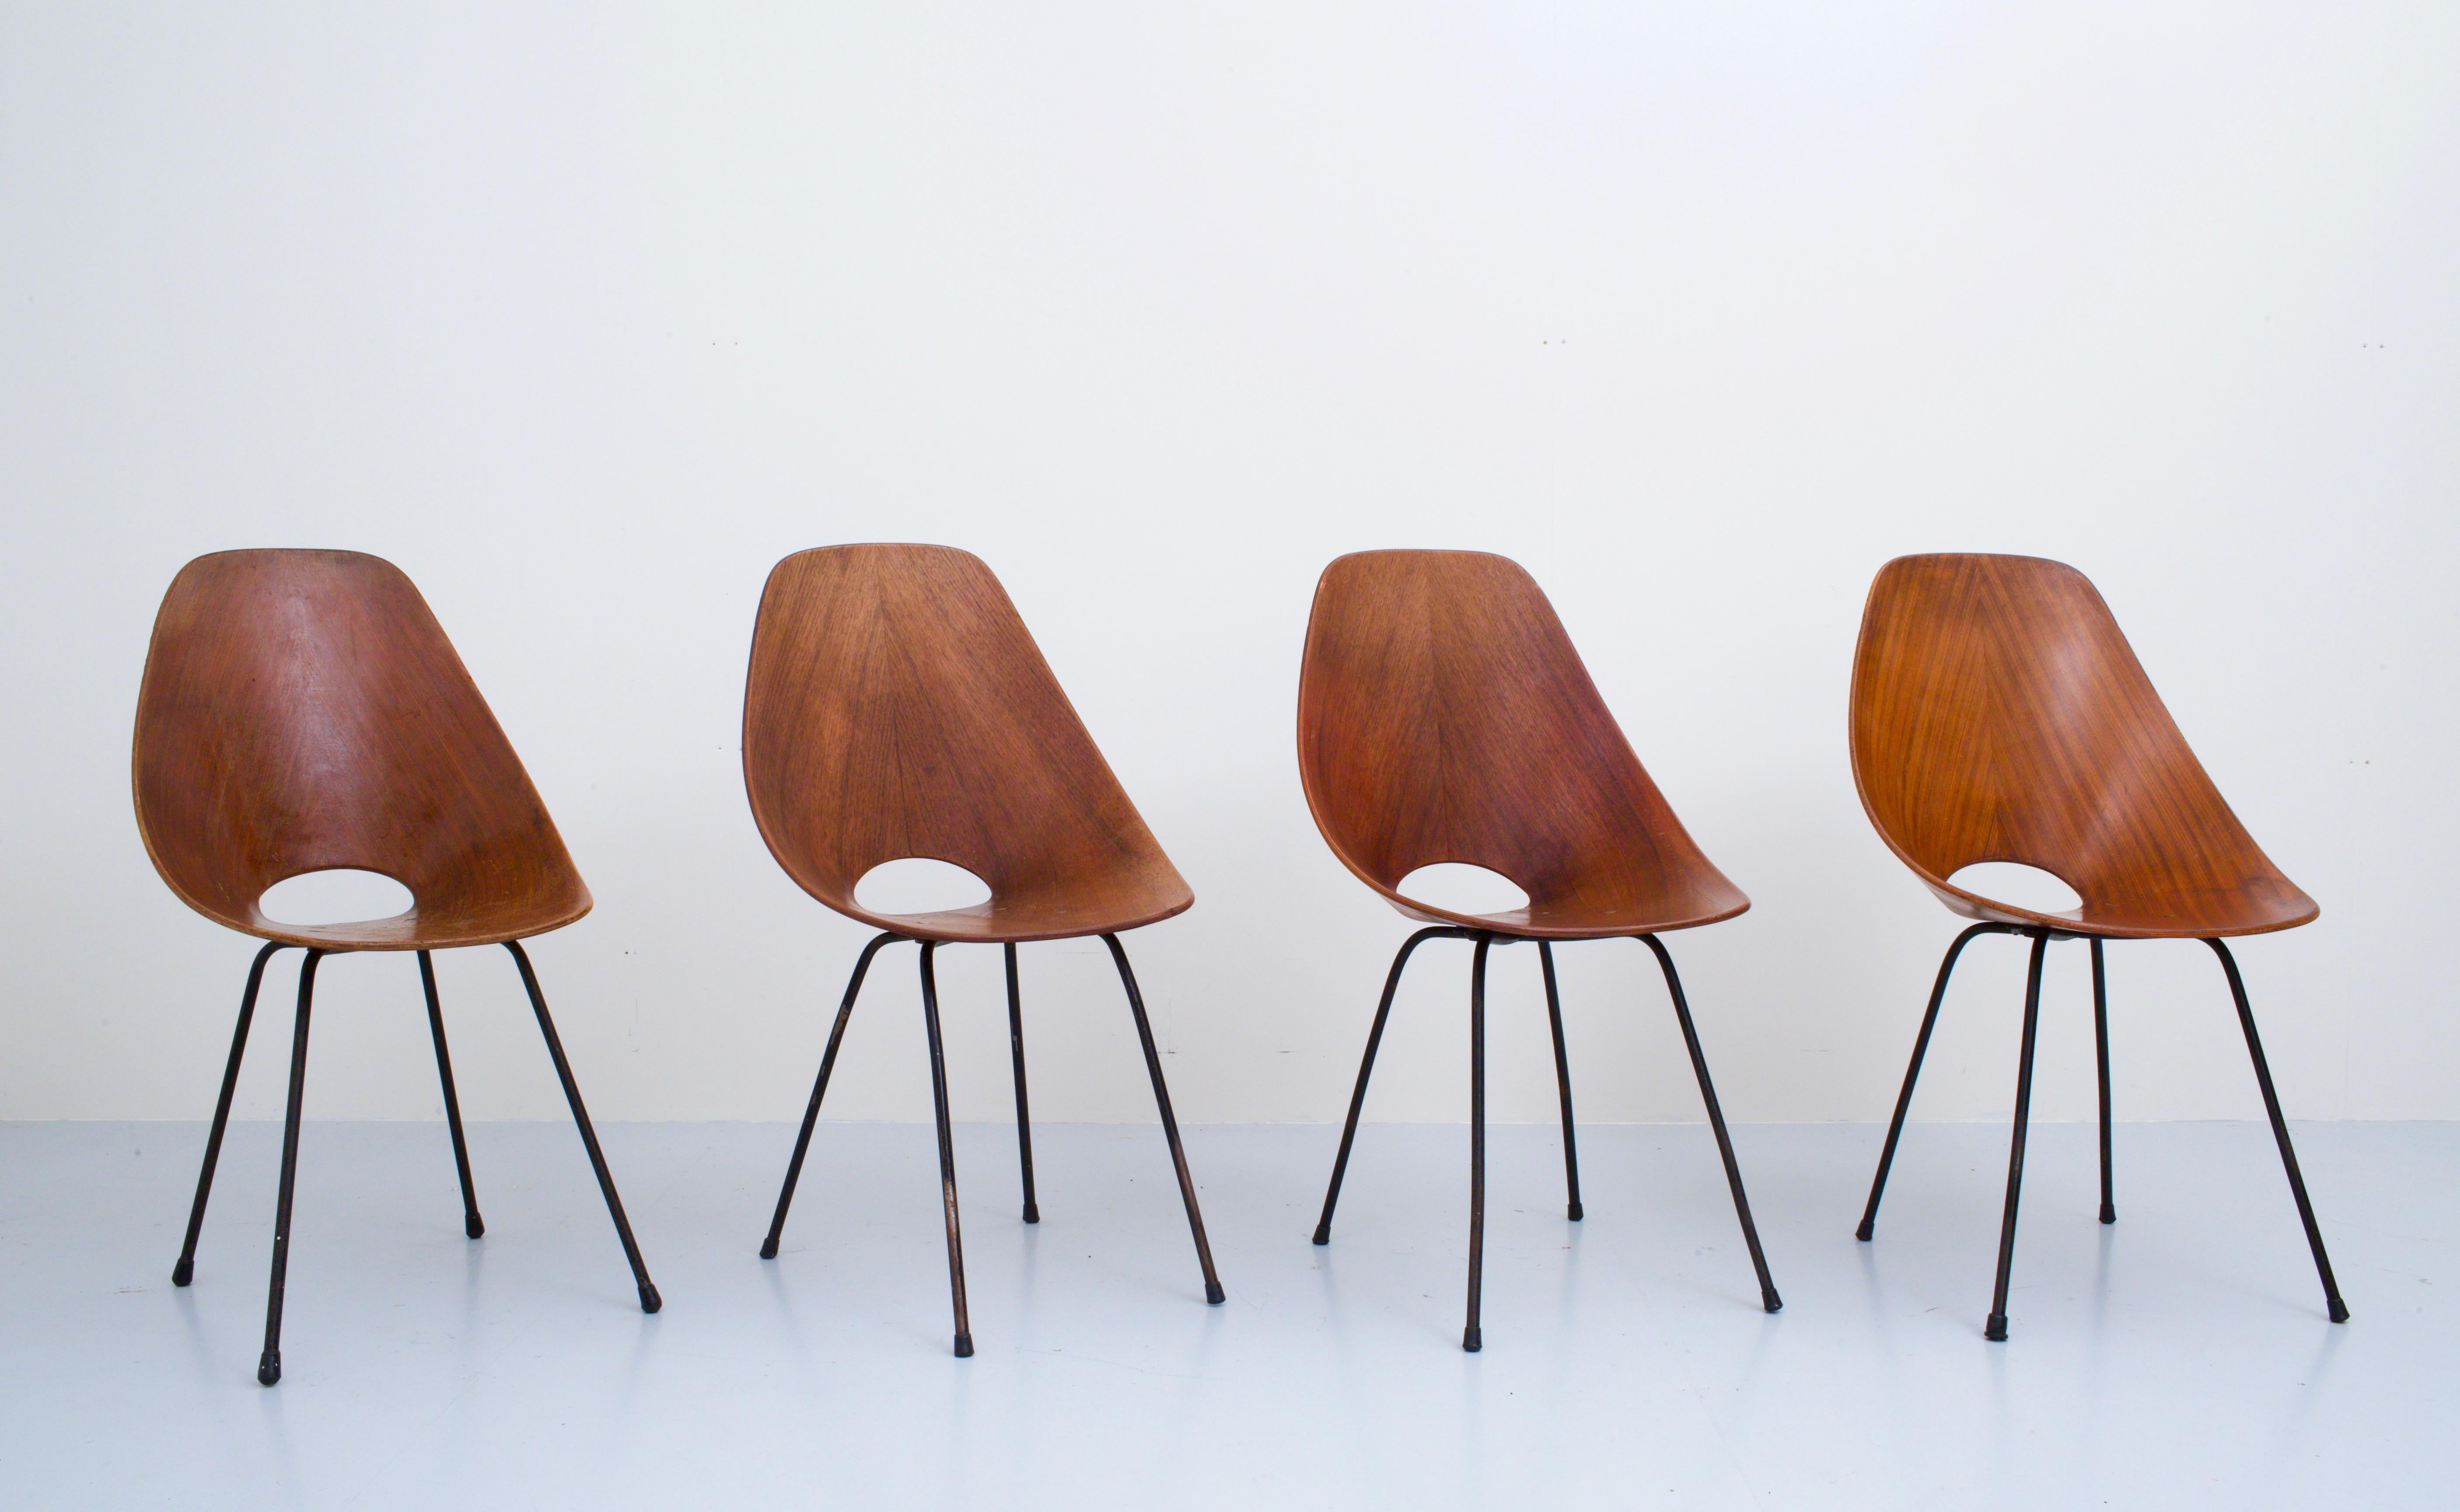 Ensemble de 4 chaises de salle à manger Medea entièrement restaurées par Vitorio Nobilis pour Fratelli Tagliabue, Italie, 1955

Nous les connaissons tous, il s'agit simplement d'un très bel ensemble de chaises. Des formes arrondies et un aspect